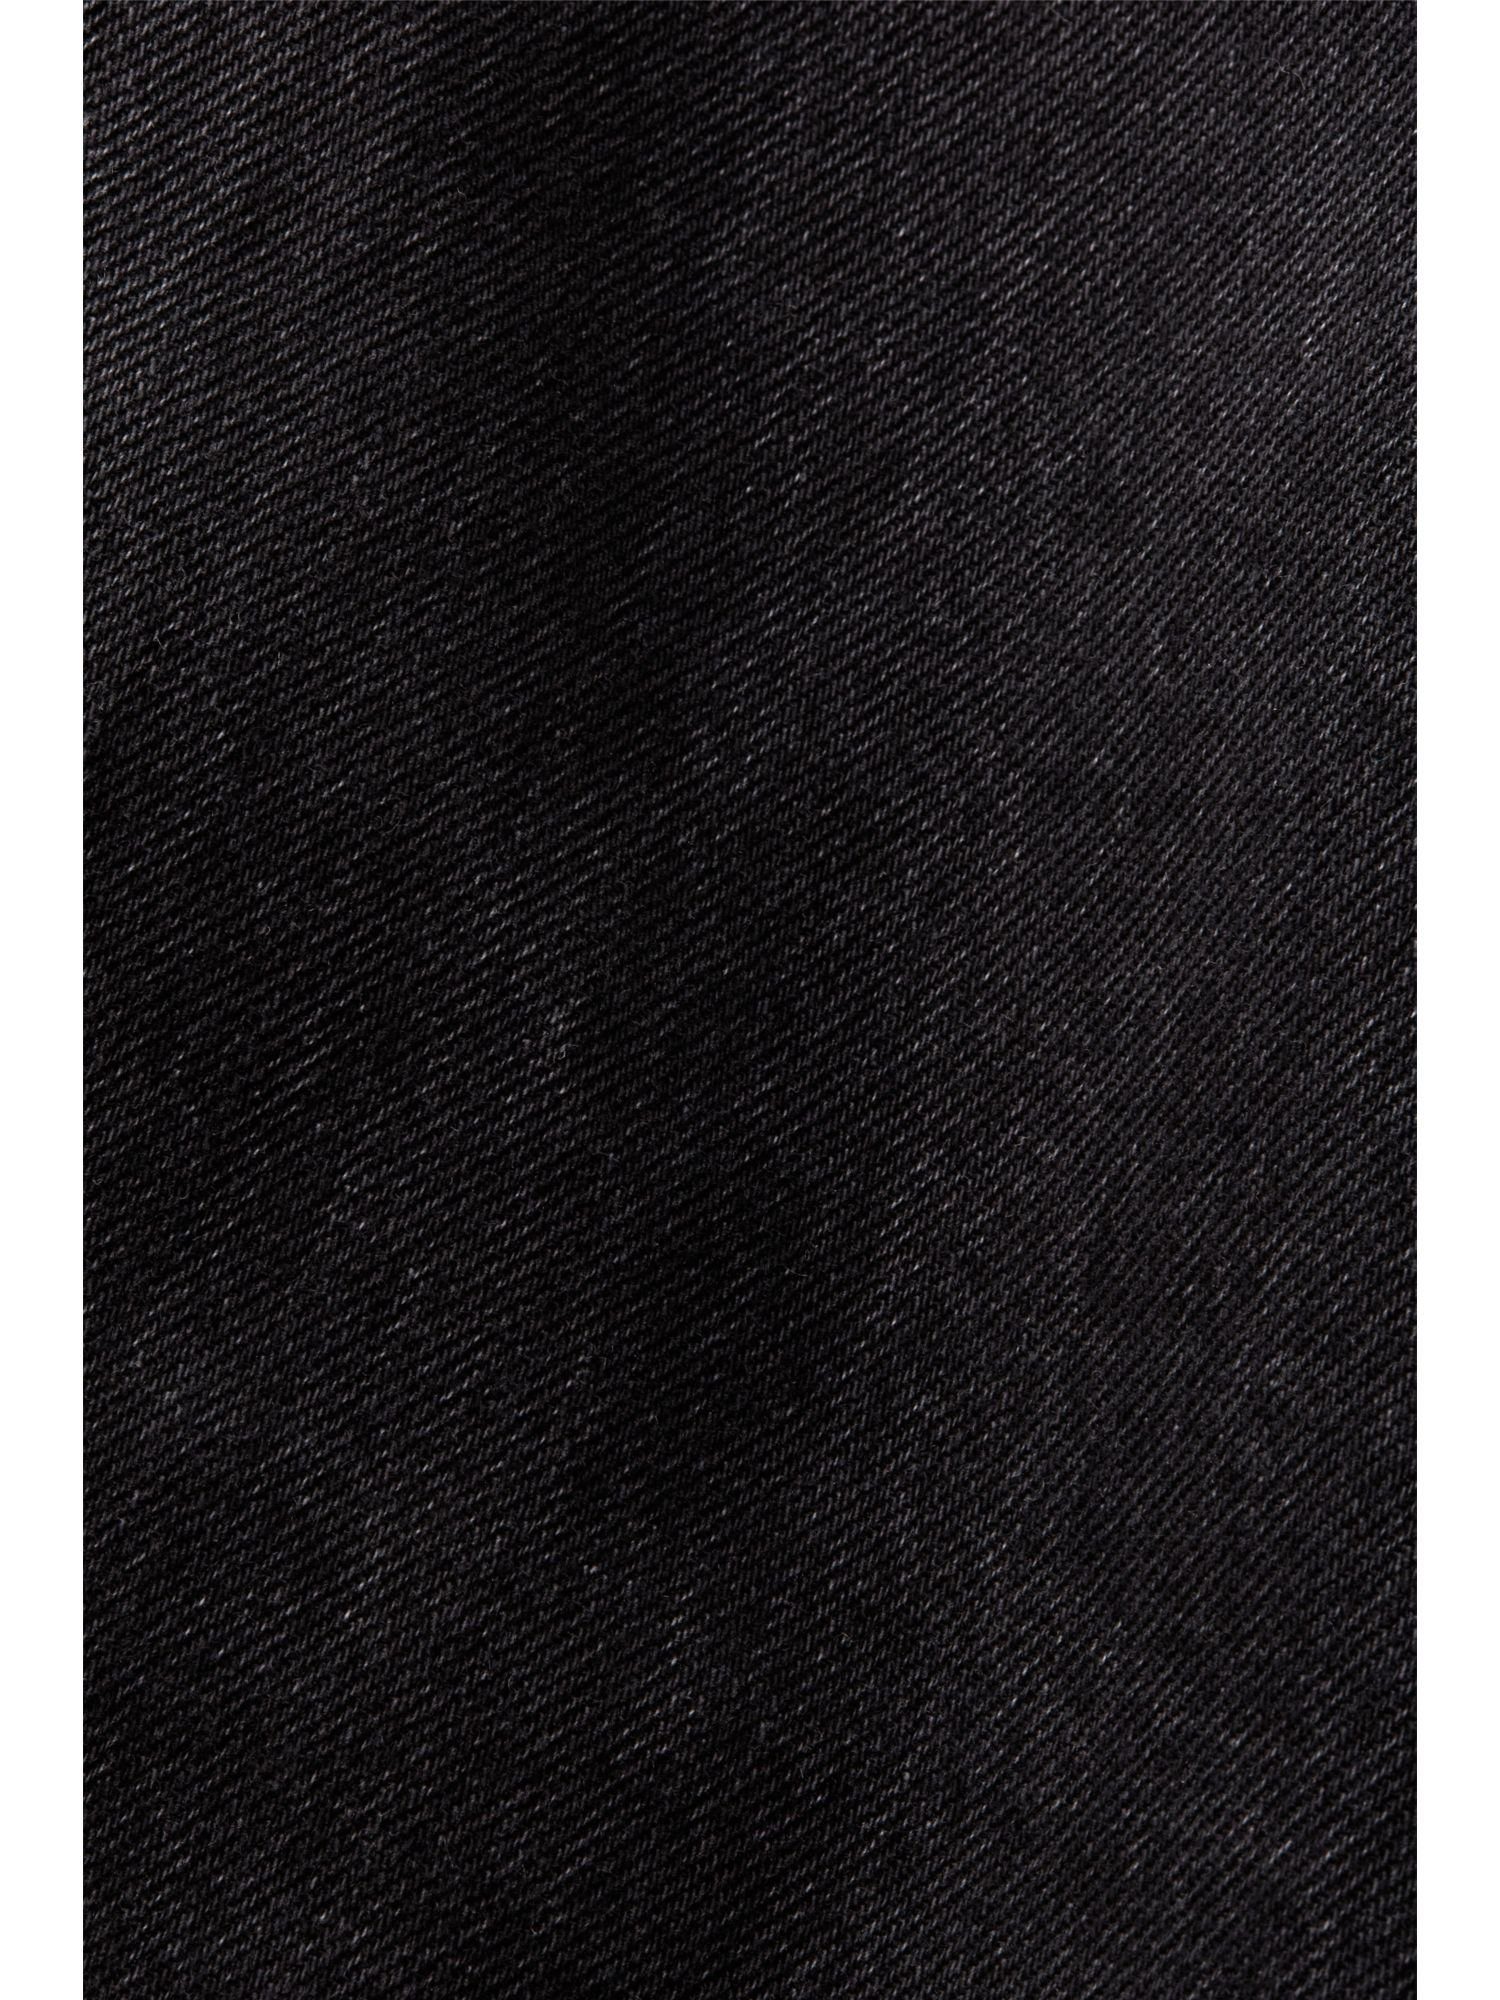 Esprit Jeansrock mit asymmetrischem Jeans-Minirock Bund